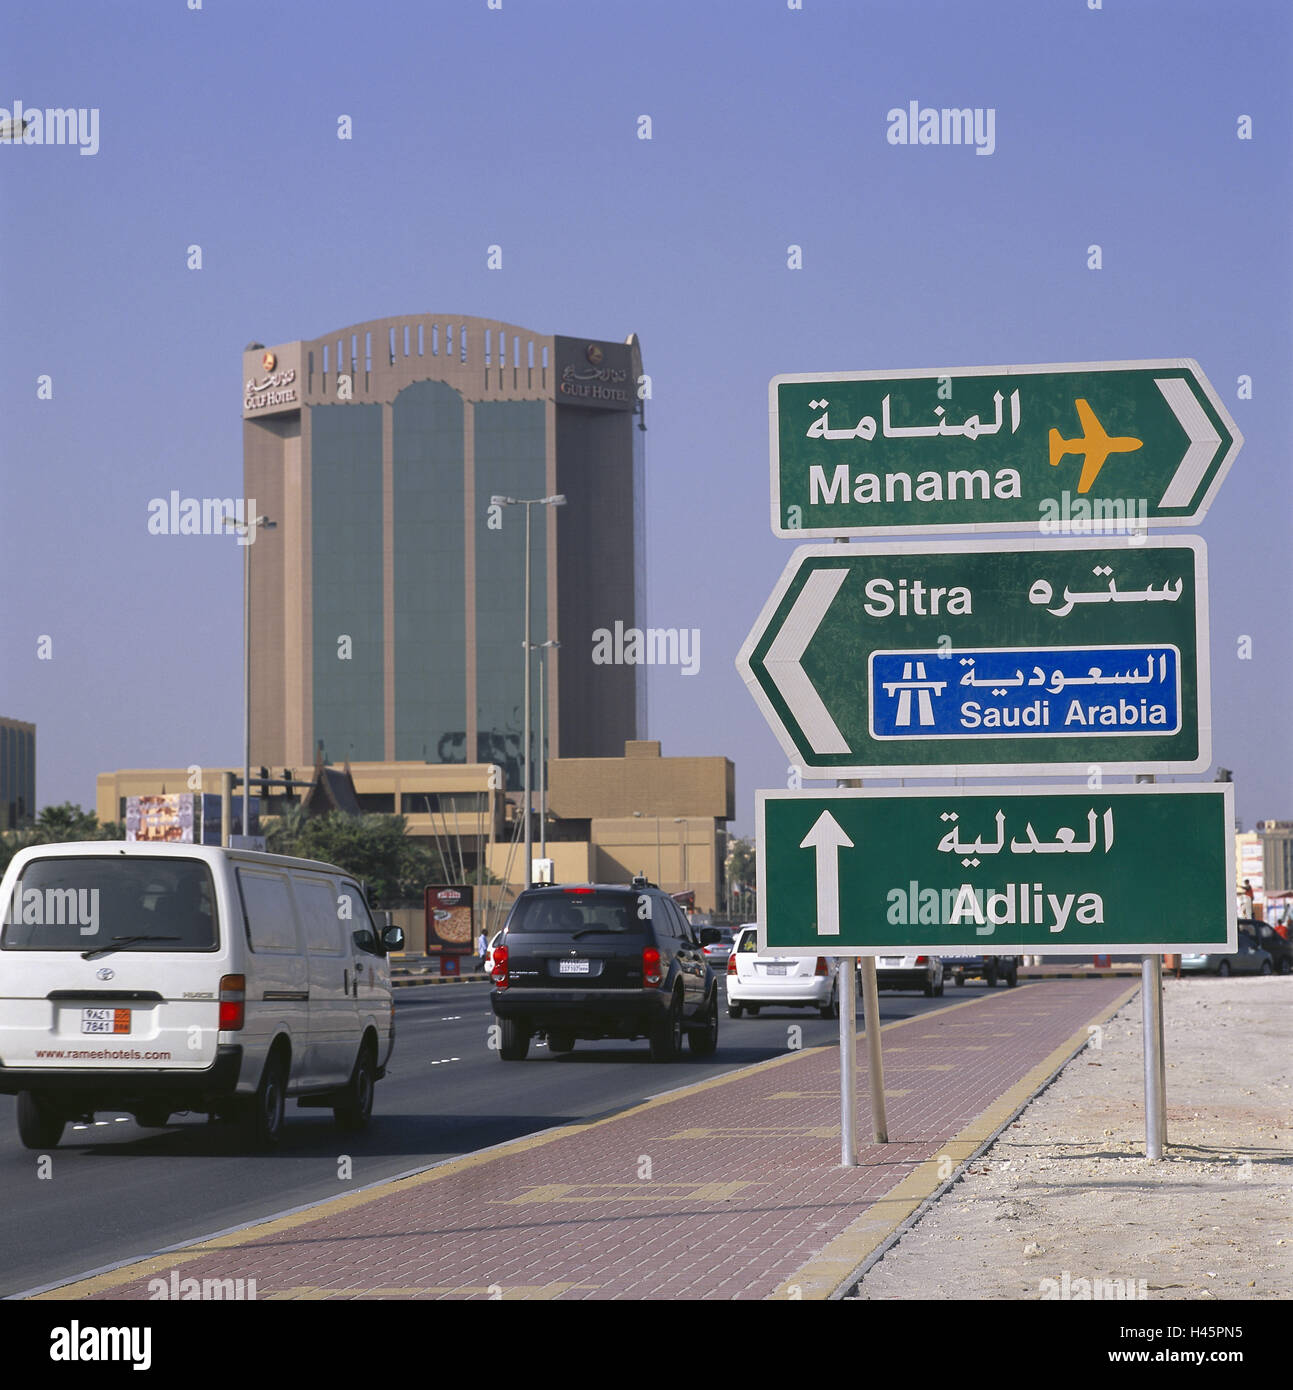 L'île de Bahreïn, Manama, haut lieu, rue, trafic, panneau, Etat insulaire, sheikdom, destination, bâtiment, architecture, hôtel, bâtiment de l'hôtel, la circulation, les voitures, les enseignes, les panneaux routiers, de l'aéroport, l'autoroute, villes, Banque D'Images